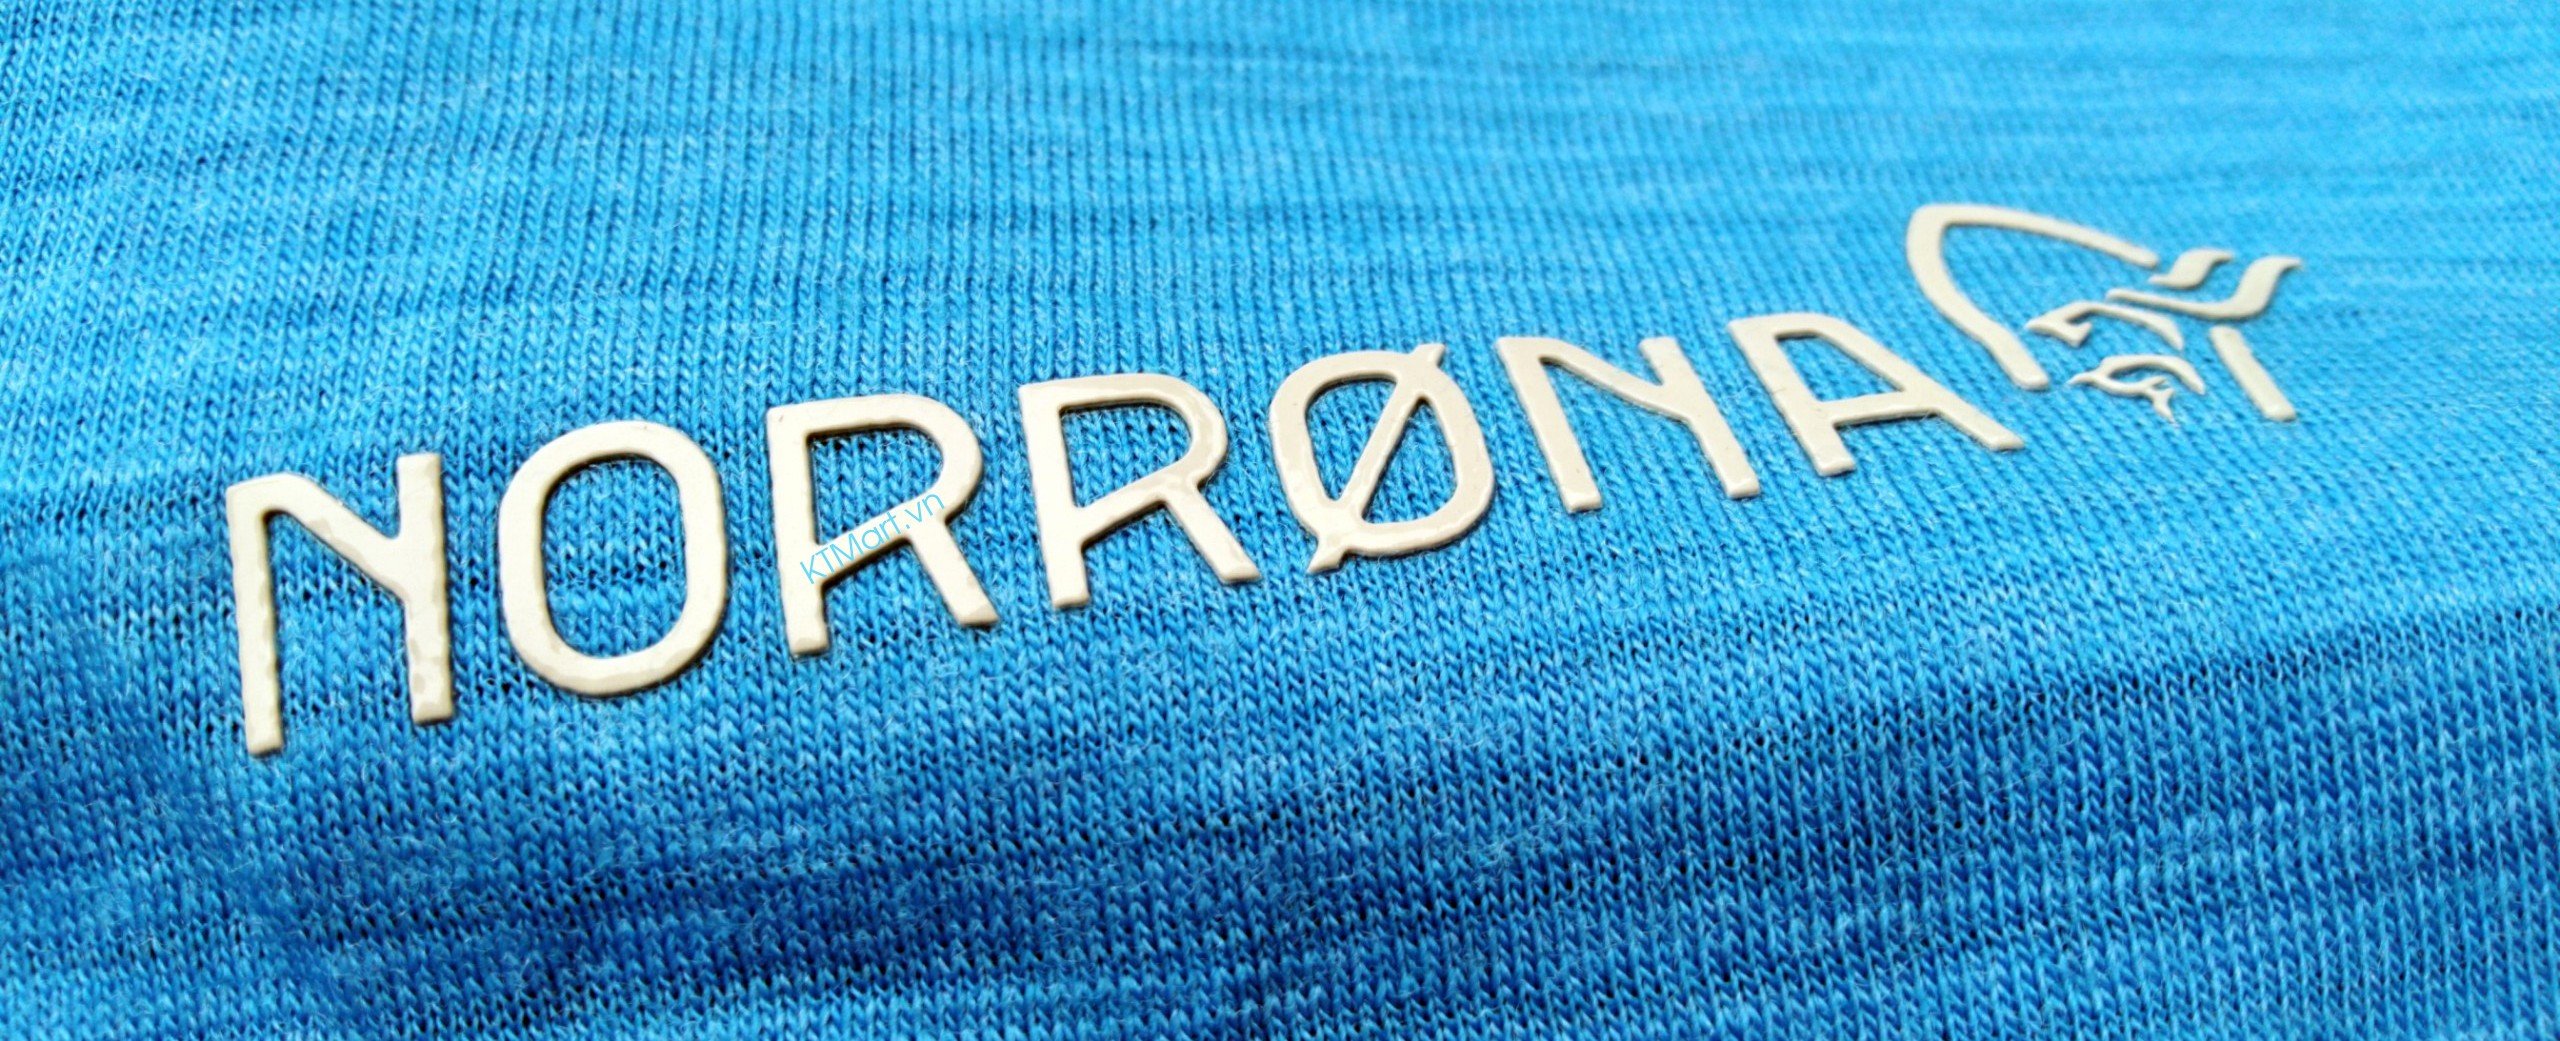 Norrona Bitihorn Wool T Shirt For Men Norrona ktmart.vn 13